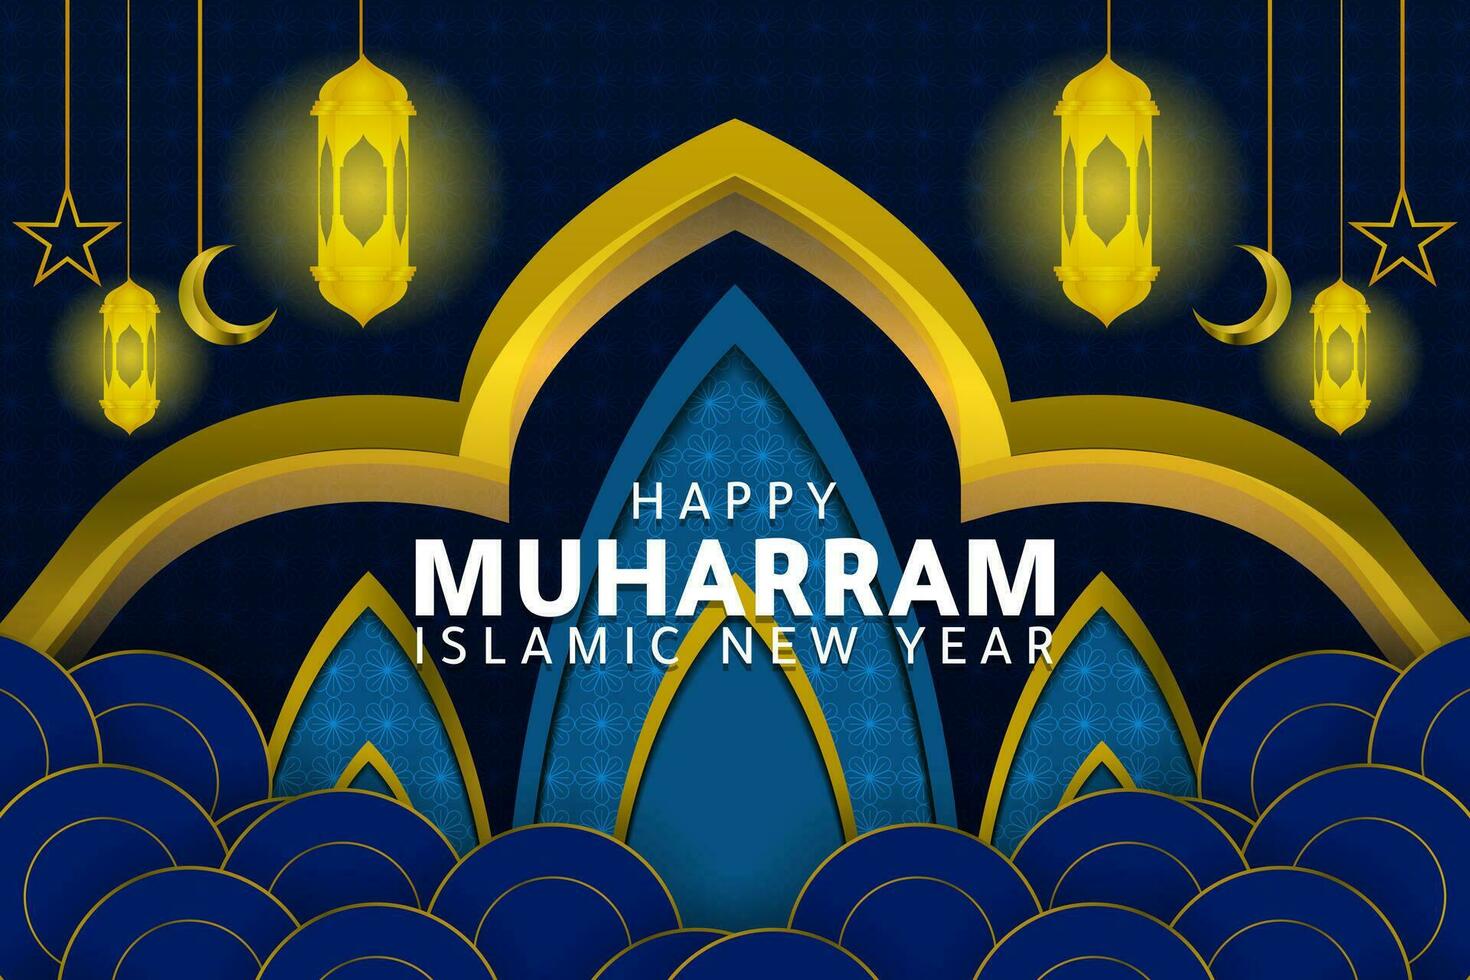 contento islámico nuevo año celebracion, islámico nuevo año bandera modelo ilustración diseño, contento día para musulmanes vector